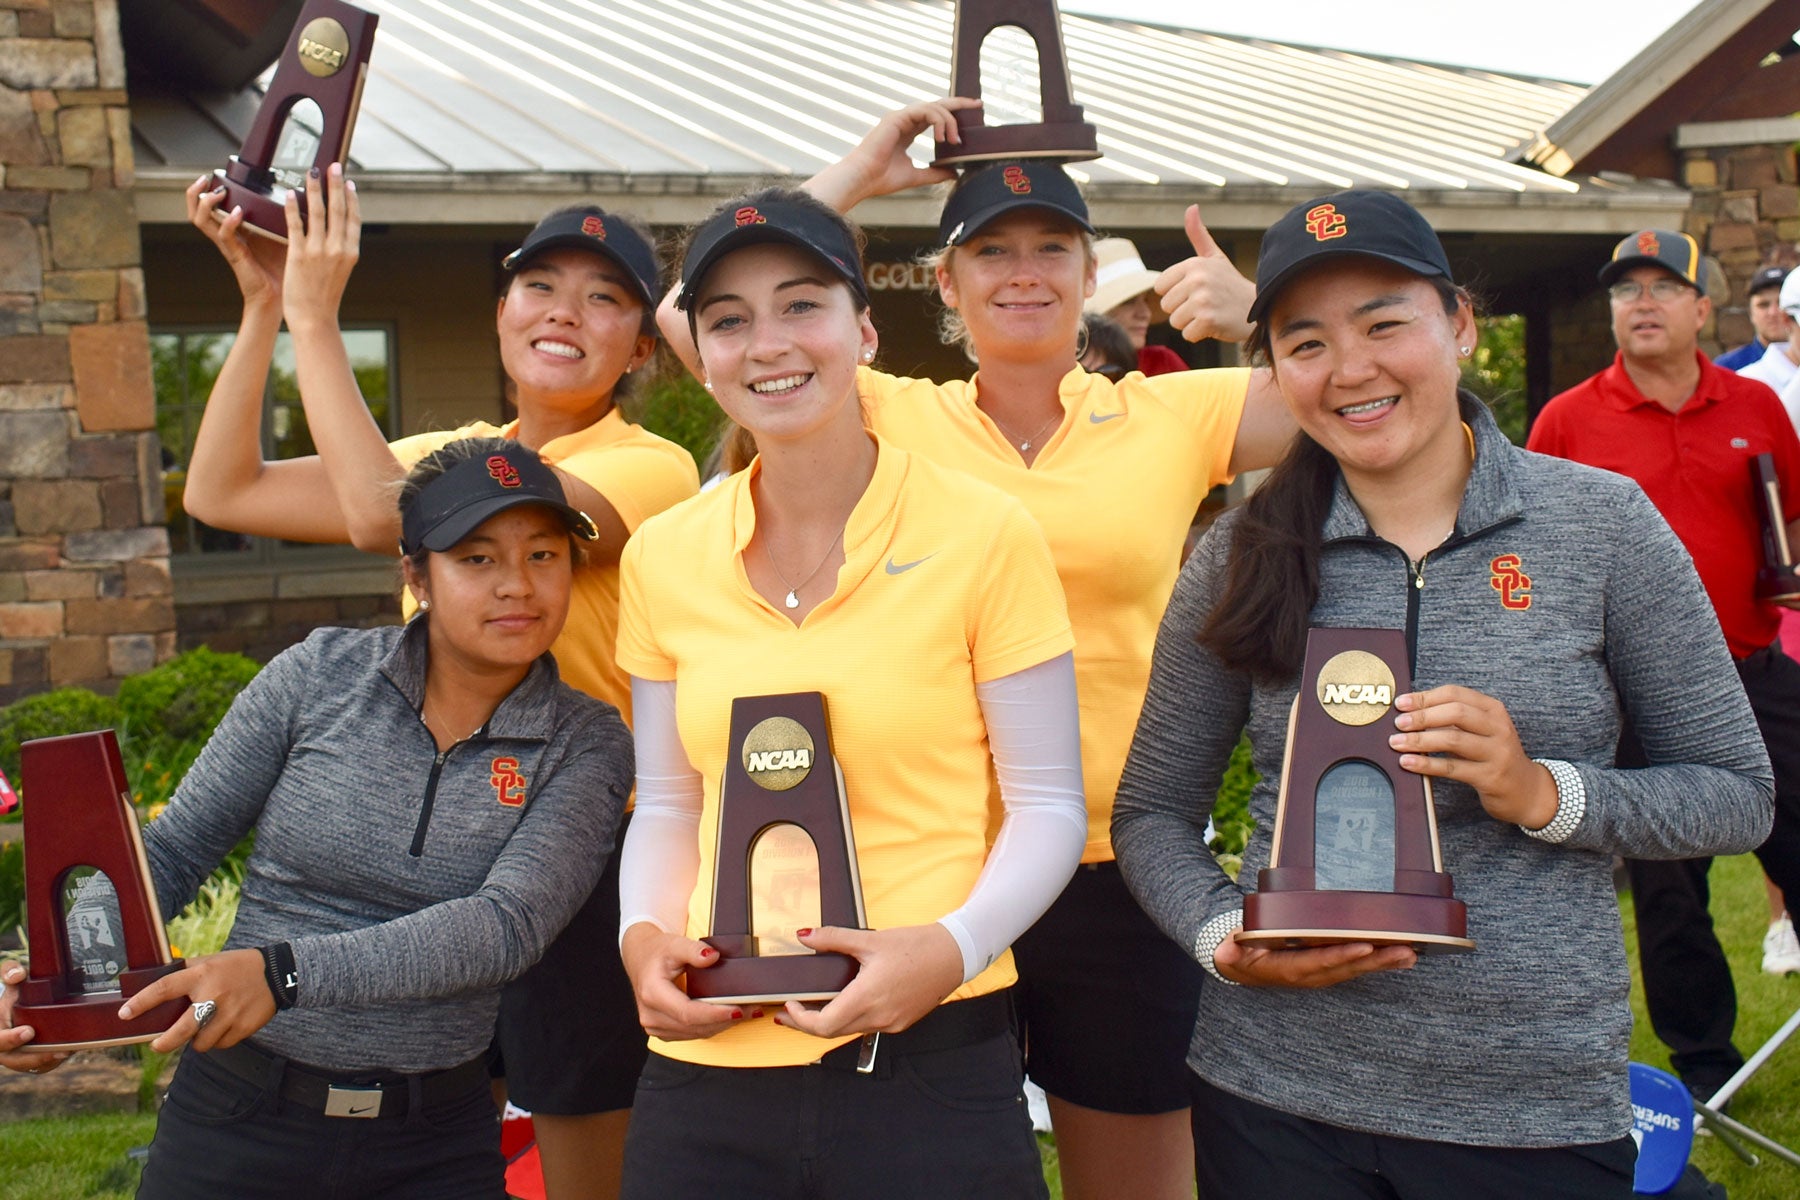 USC sports highlights 2018: USC women's golf semi-finals